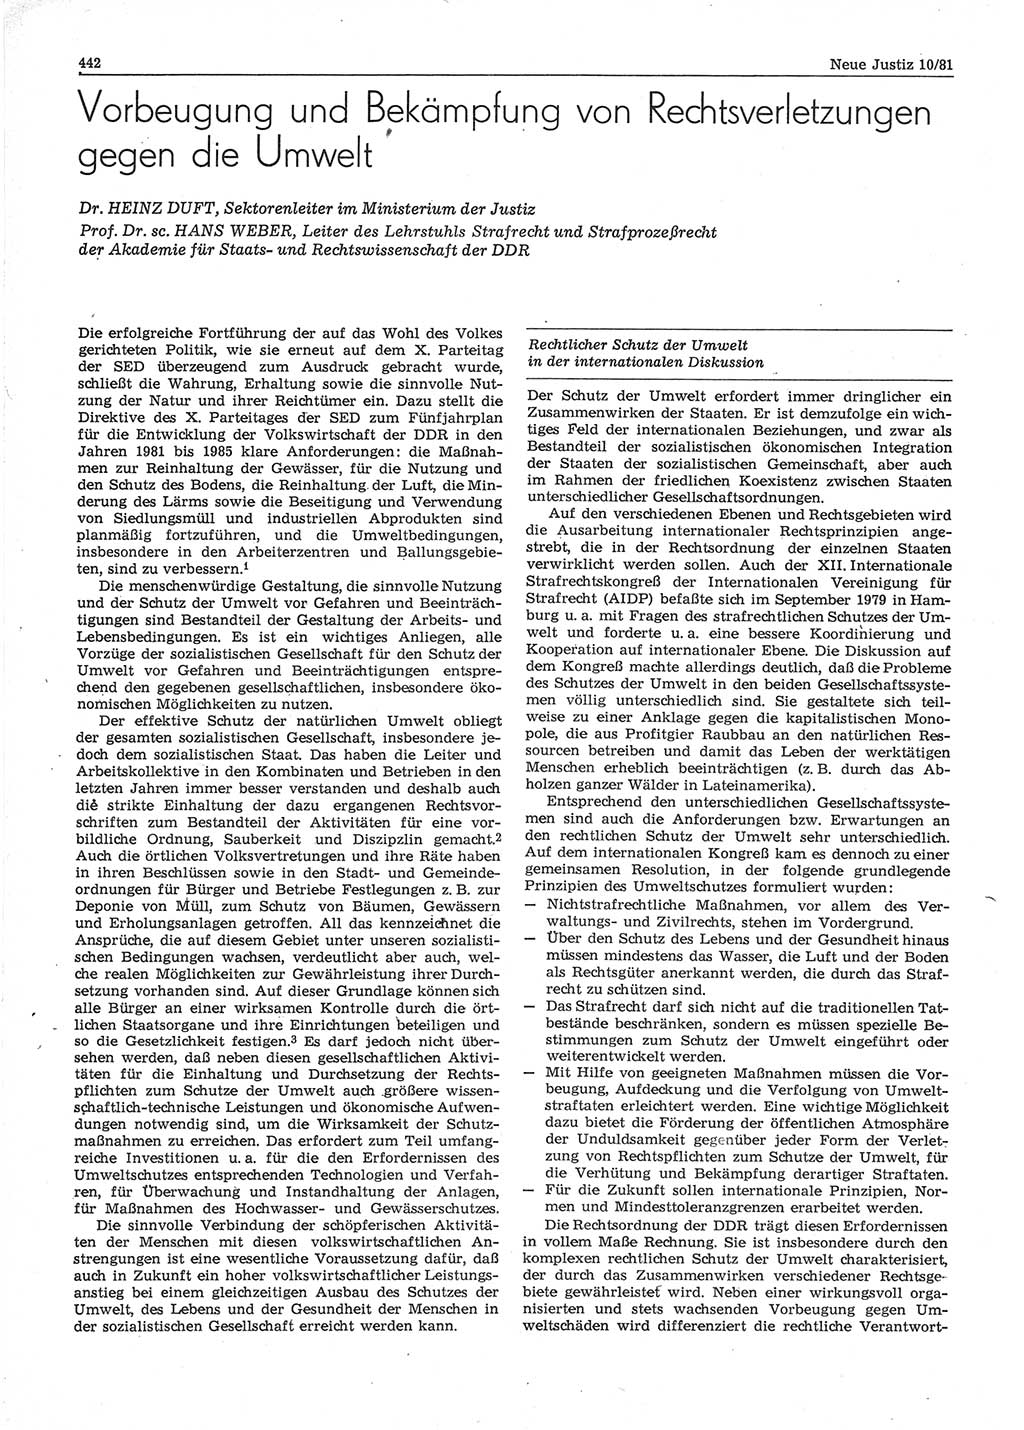 Neue Justiz (NJ), Zeitschrift für sozialistisches Recht und Gesetzlichkeit [Deutsche Demokratische Republik (DDR)], 35. Jahrgang 1981, Seite 442 (NJ DDR 1981, S. 442)